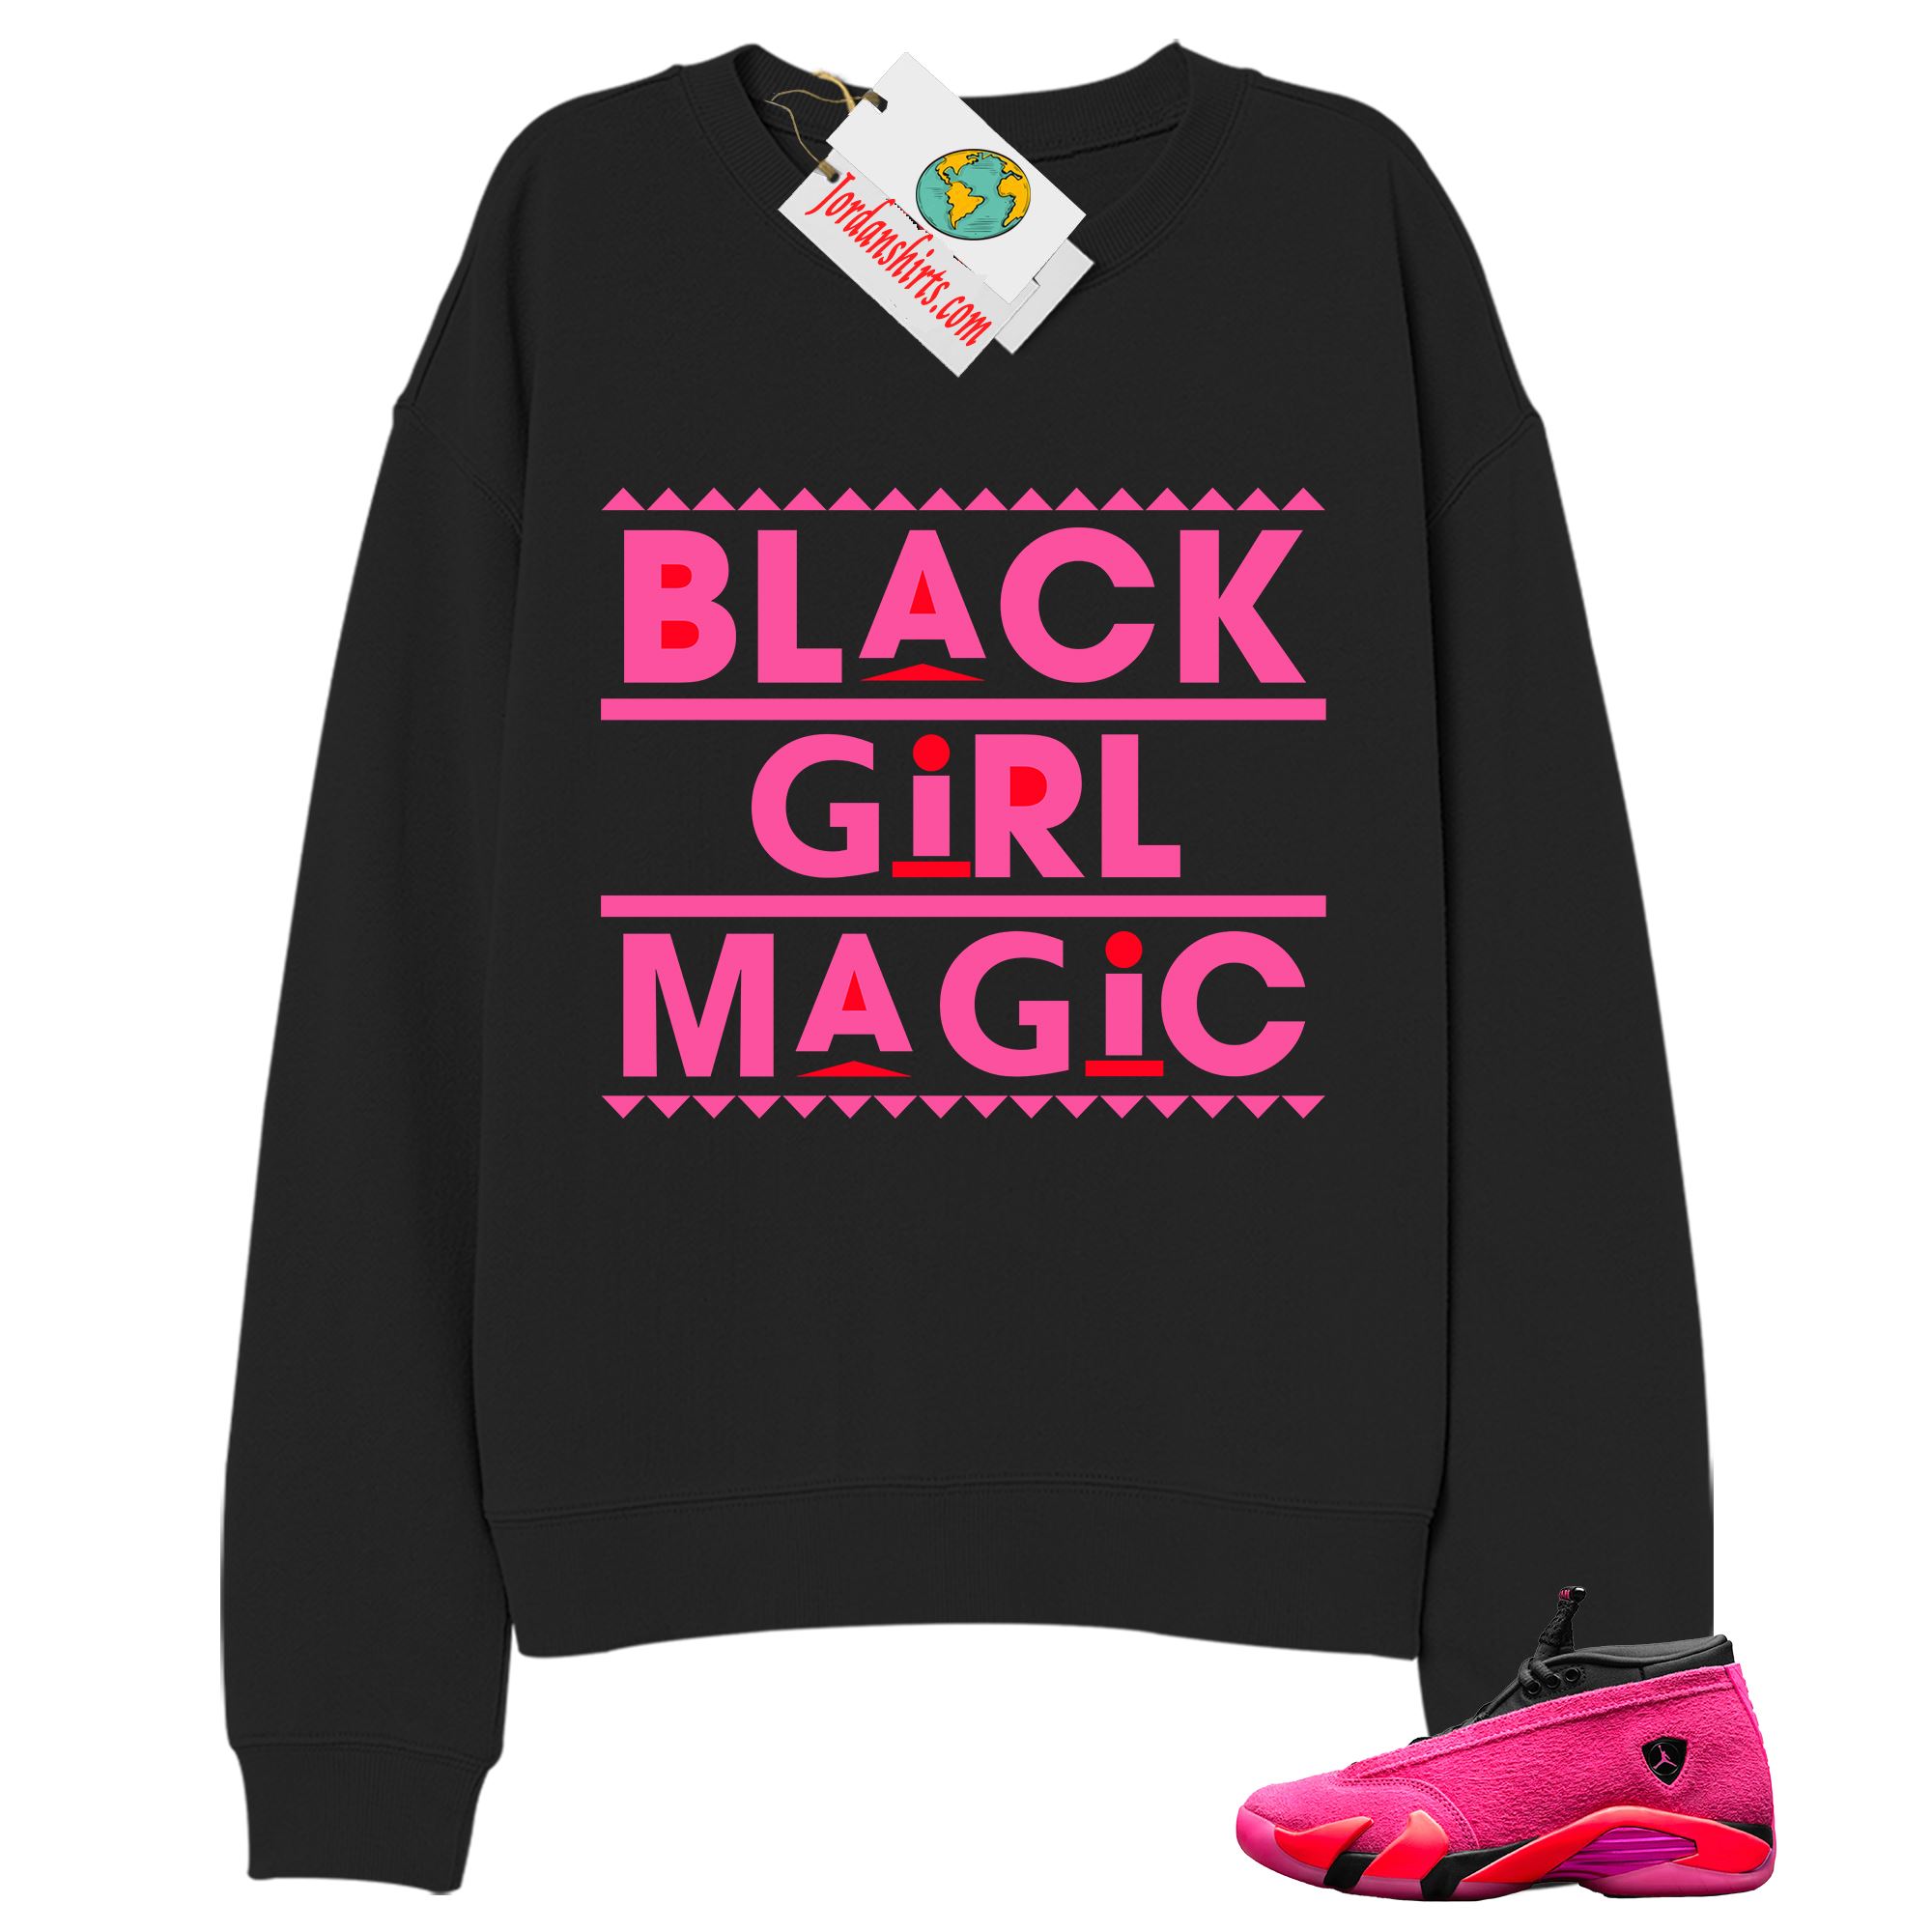 Jordan 14 Sweatshirt, Black Girl Magic Black Sweatshirt Air Jordan 14 Wmns Shocking Pink 14s Full Size Up To 5xl